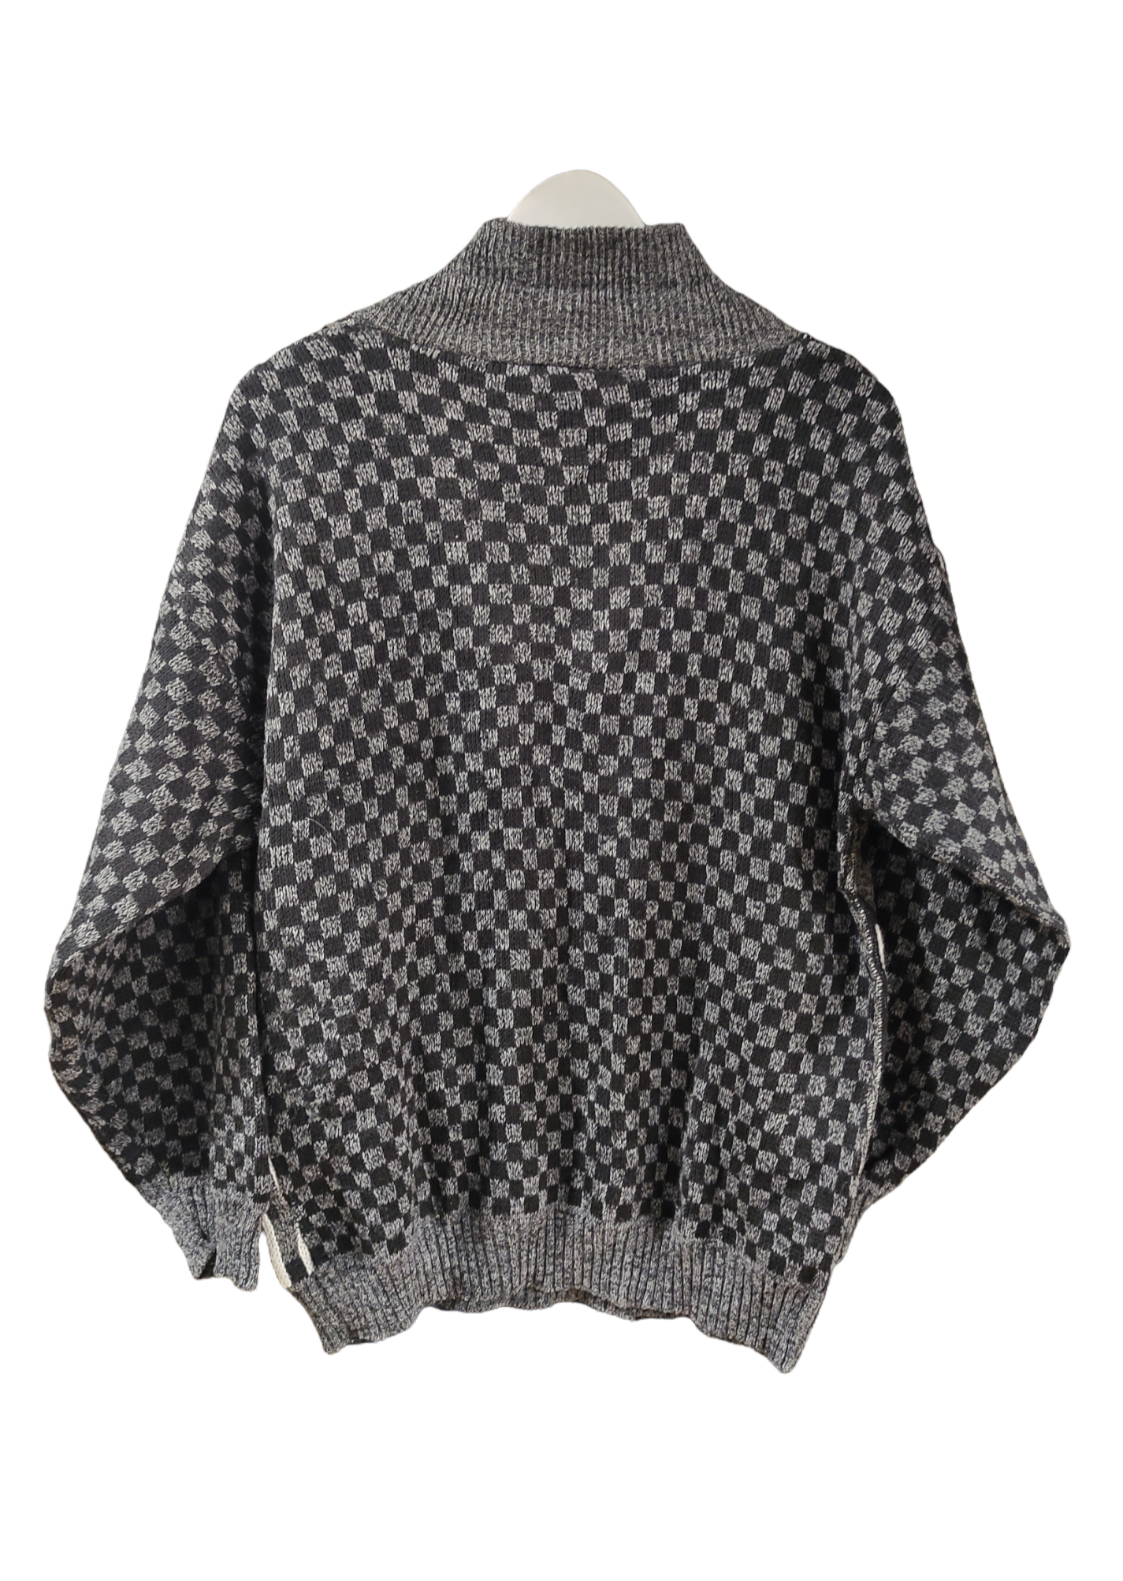 Vintage, Ανδρική Πλεκτή Μπλούζα - Πουλόβερ σε Γκρι - Μαύρο χρώμα (Large)